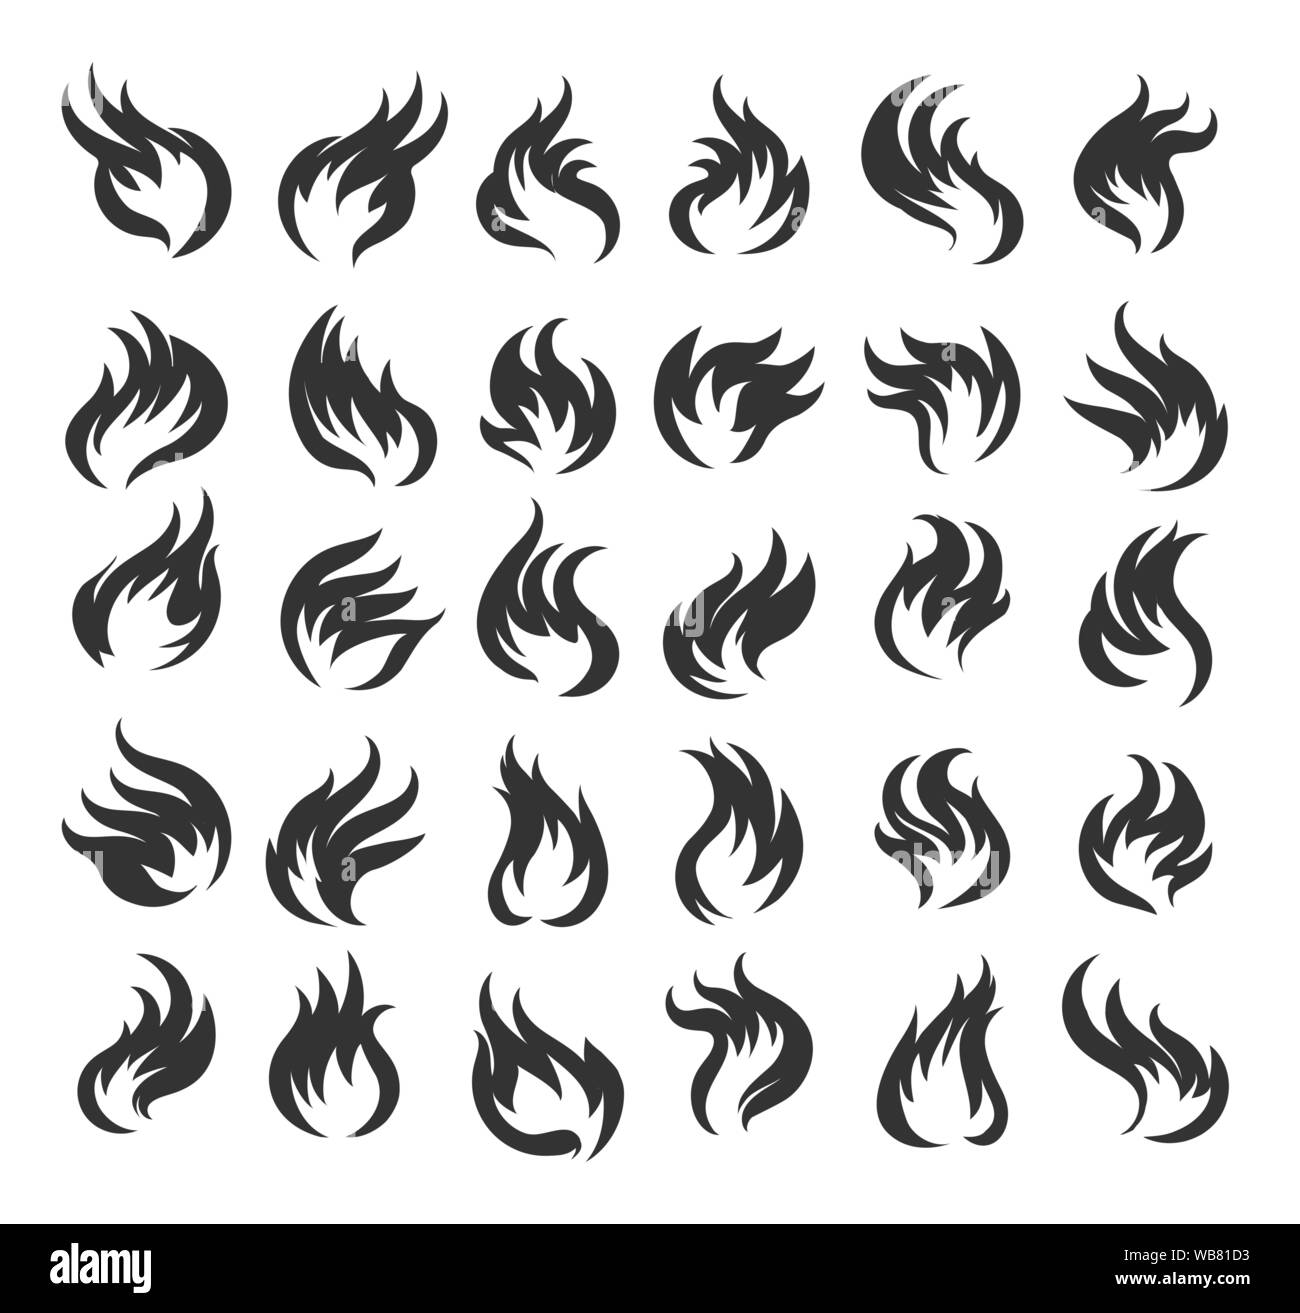 Feuer flammen Icon Set. 30 Vector Icons von Feuer auf weißem Hintergrund. Vector Illustration Stock Vektor